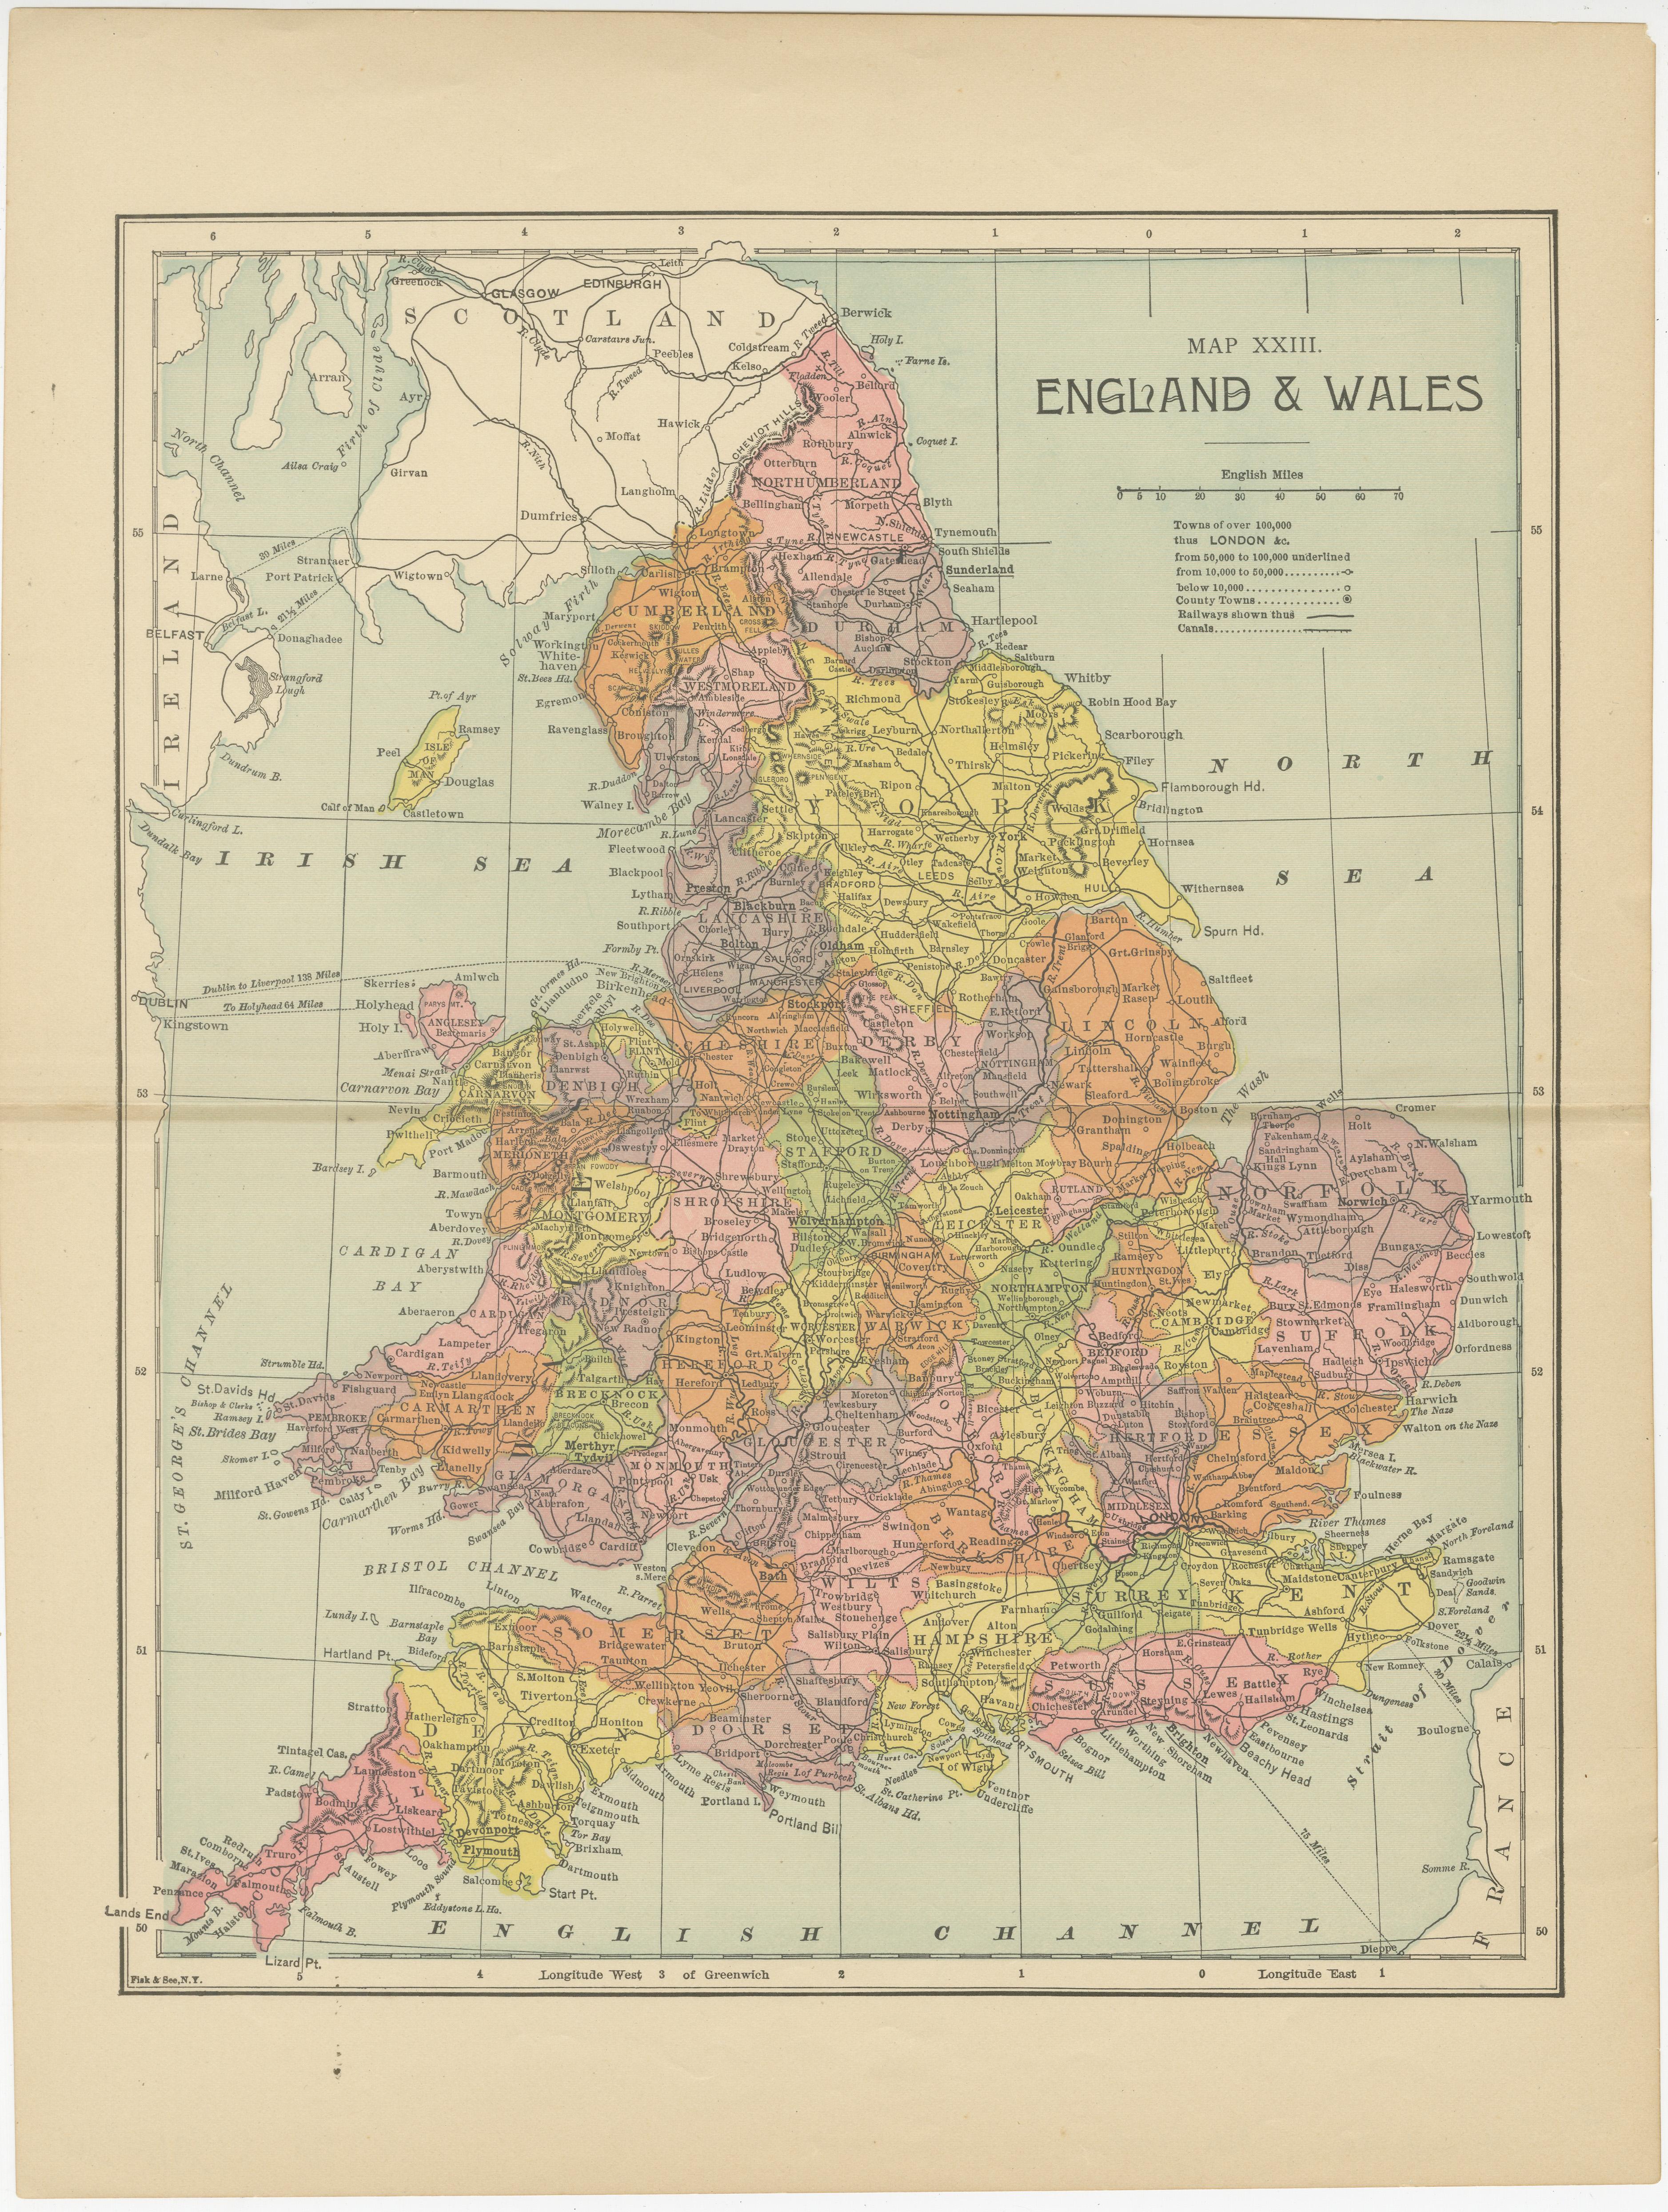 Antike Original-Karte mit dem Titel 'Map XXIII England & Wales'. Lithografierte Karte von England und Wales. Herausgegeben von Fisk & See, ca. 1890. 